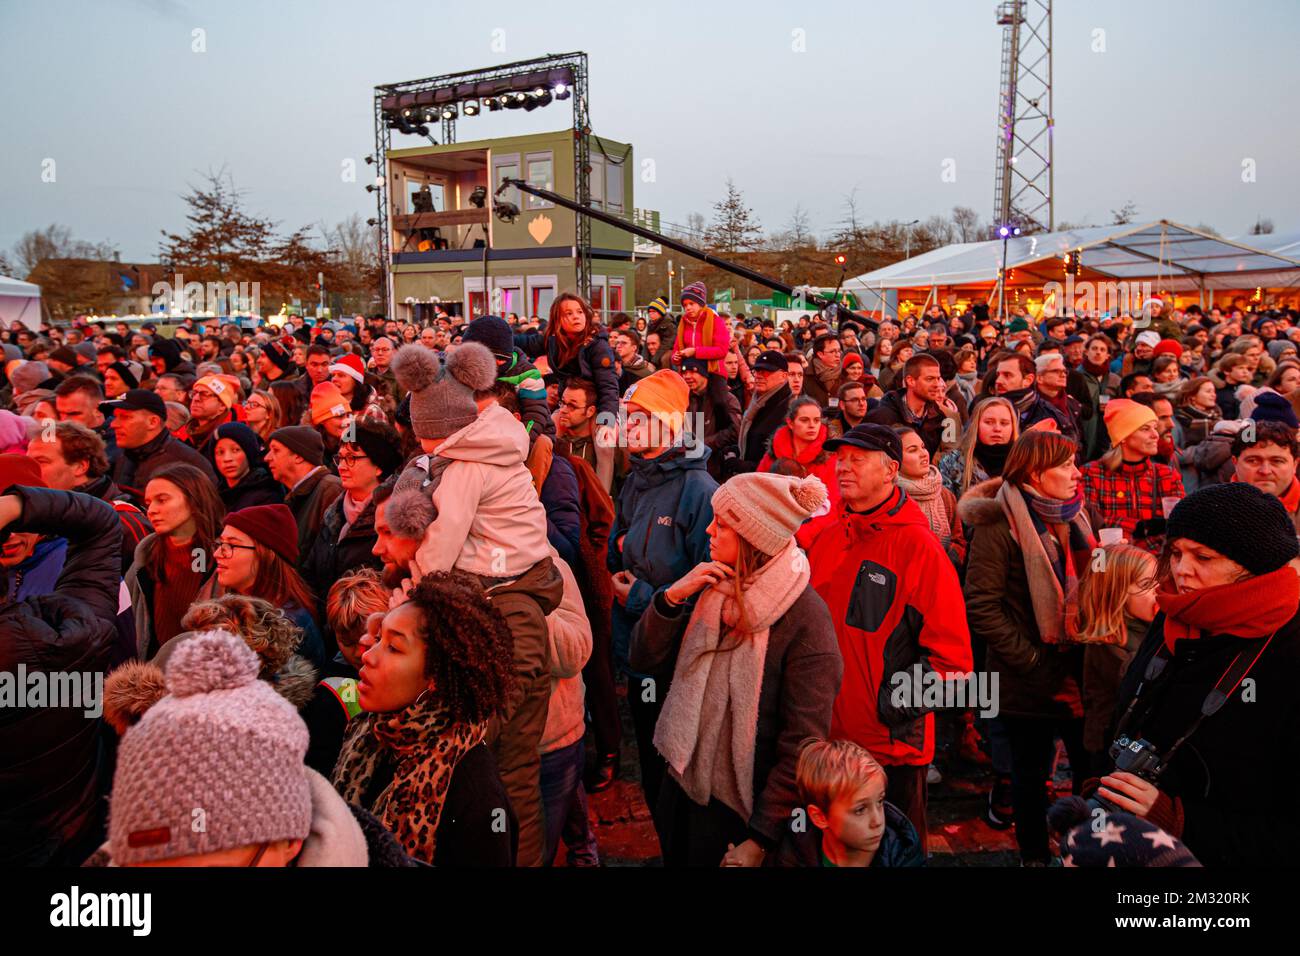 L'immagine mostra l'evento conclusivo dello 'Studio Brussel voor De Warmste  Week in Kortrijk' per sostenere la campagna di beneficenza della settimana  De Warmste (la settimana più calda), organizzata dall'emittente televisiva  e radiofonica